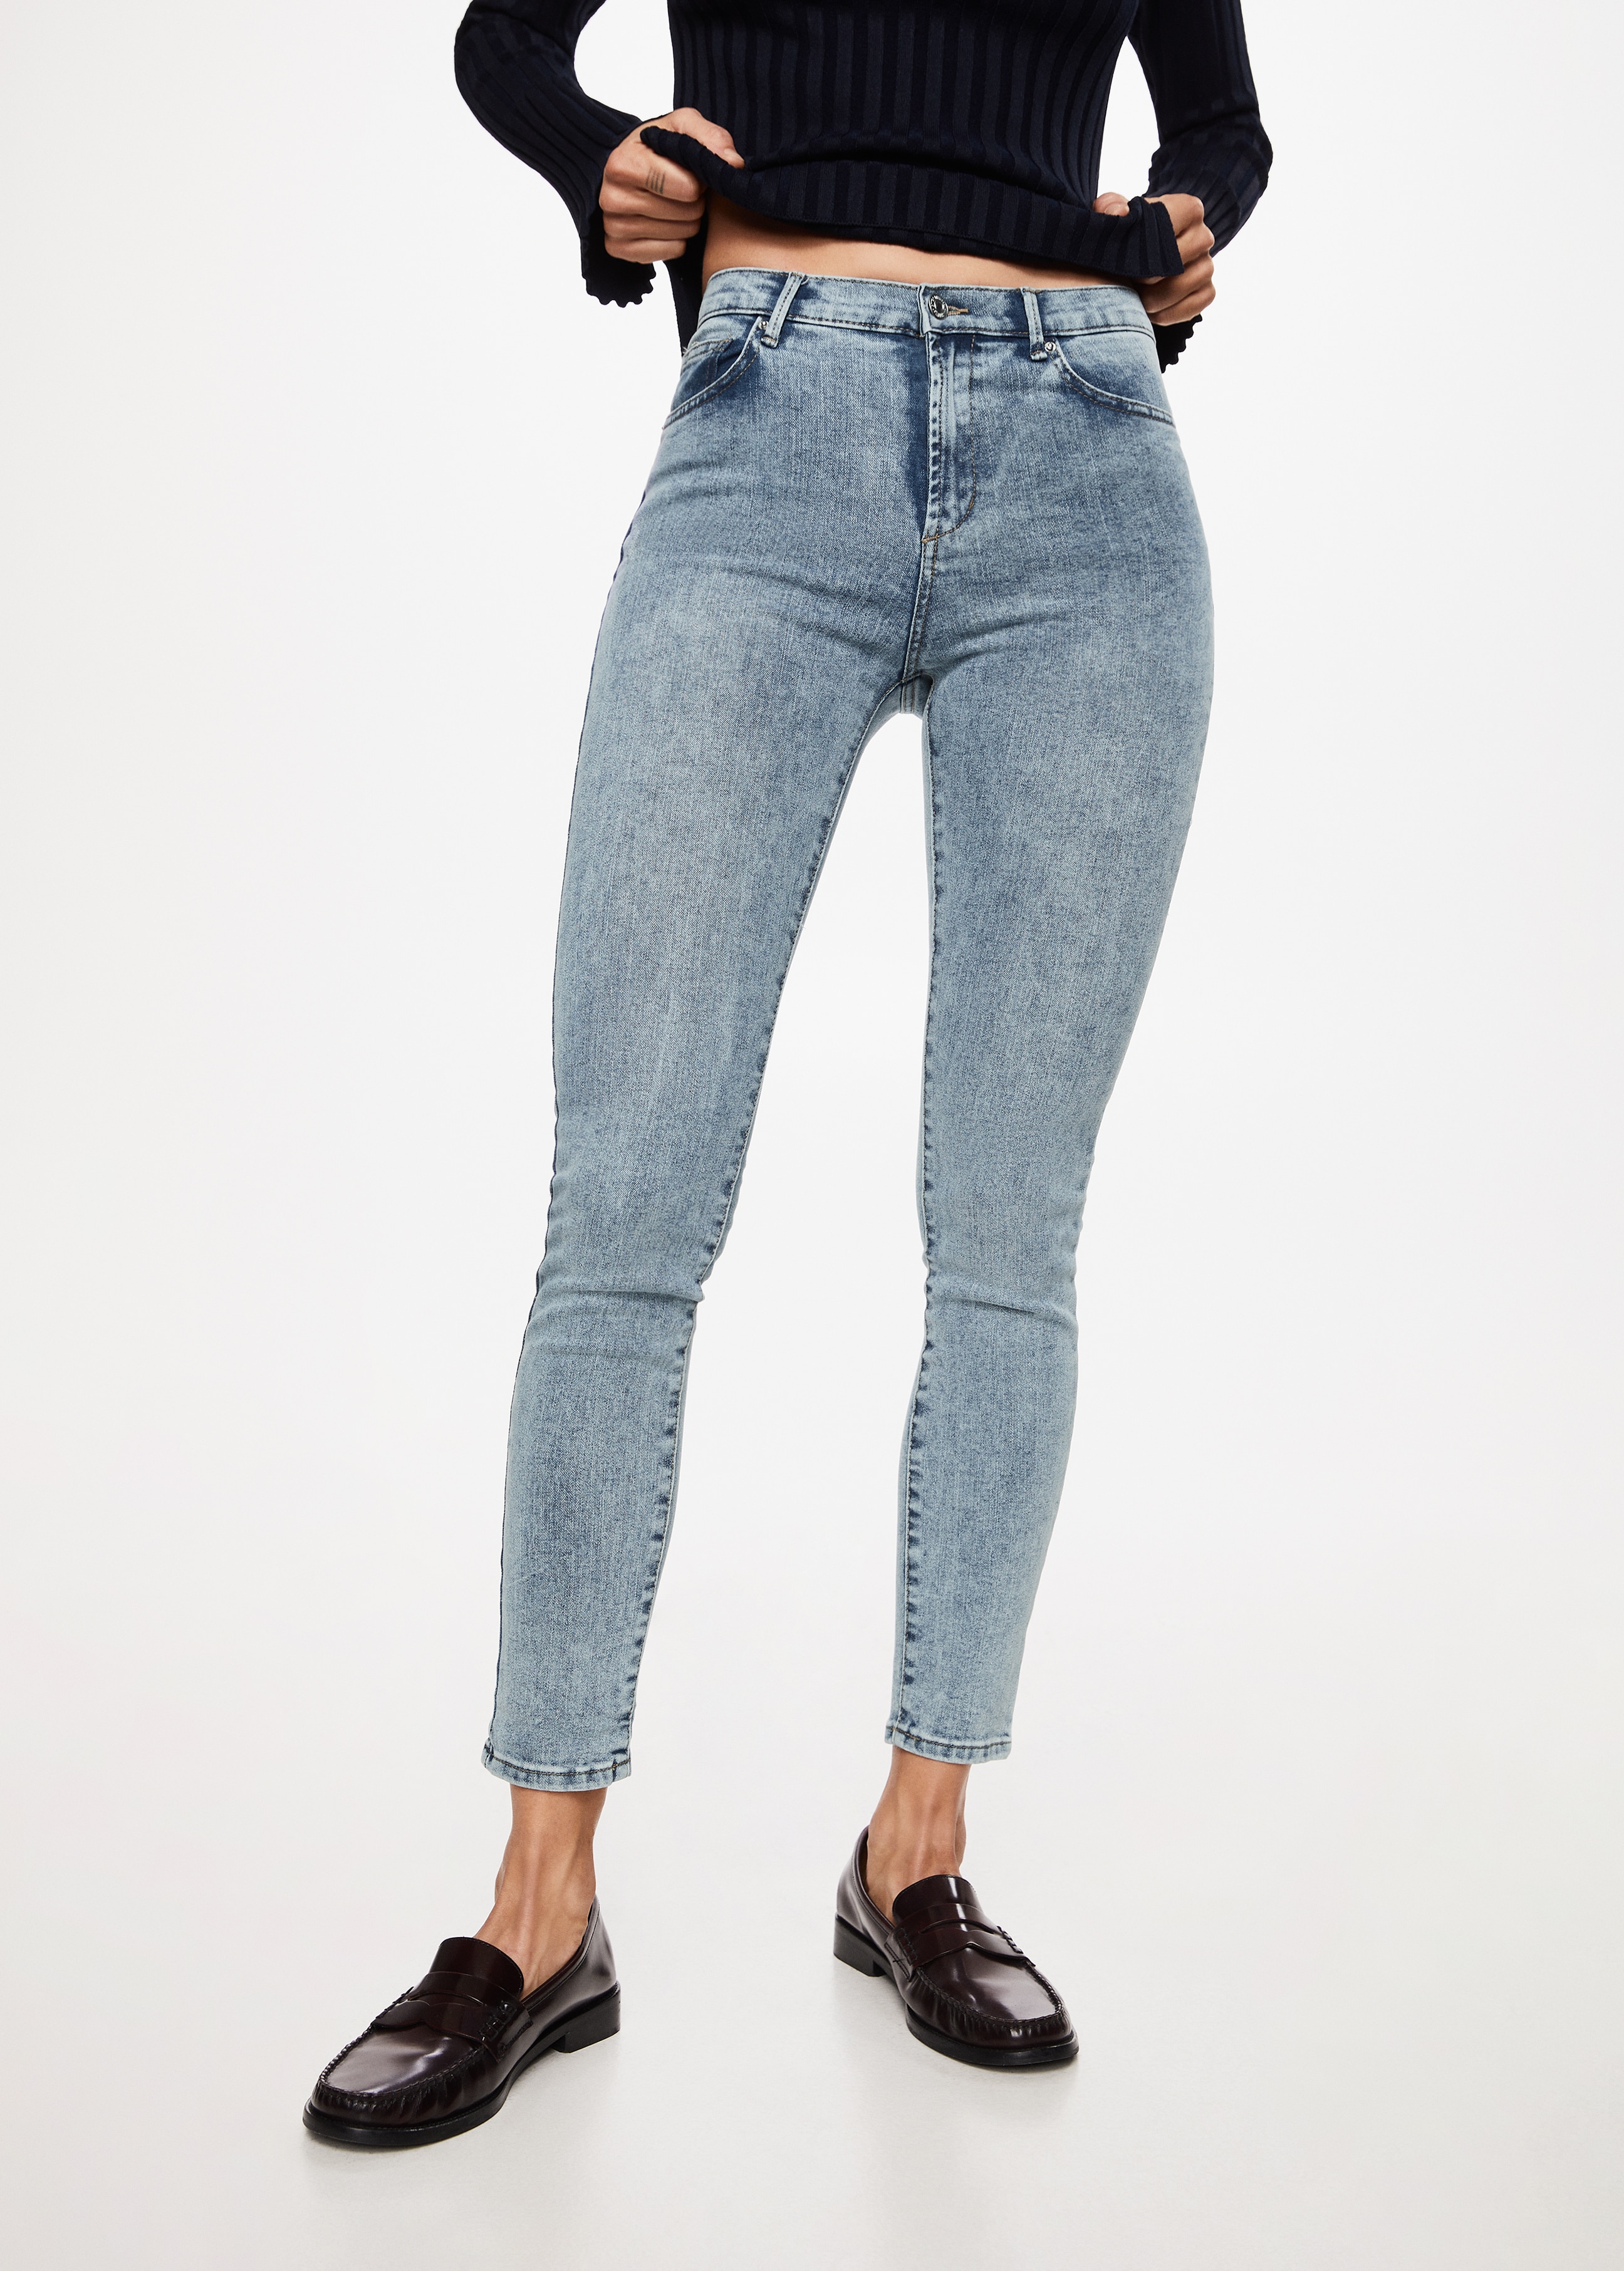 Elsa medium-waist skinny jeans - Medium plane